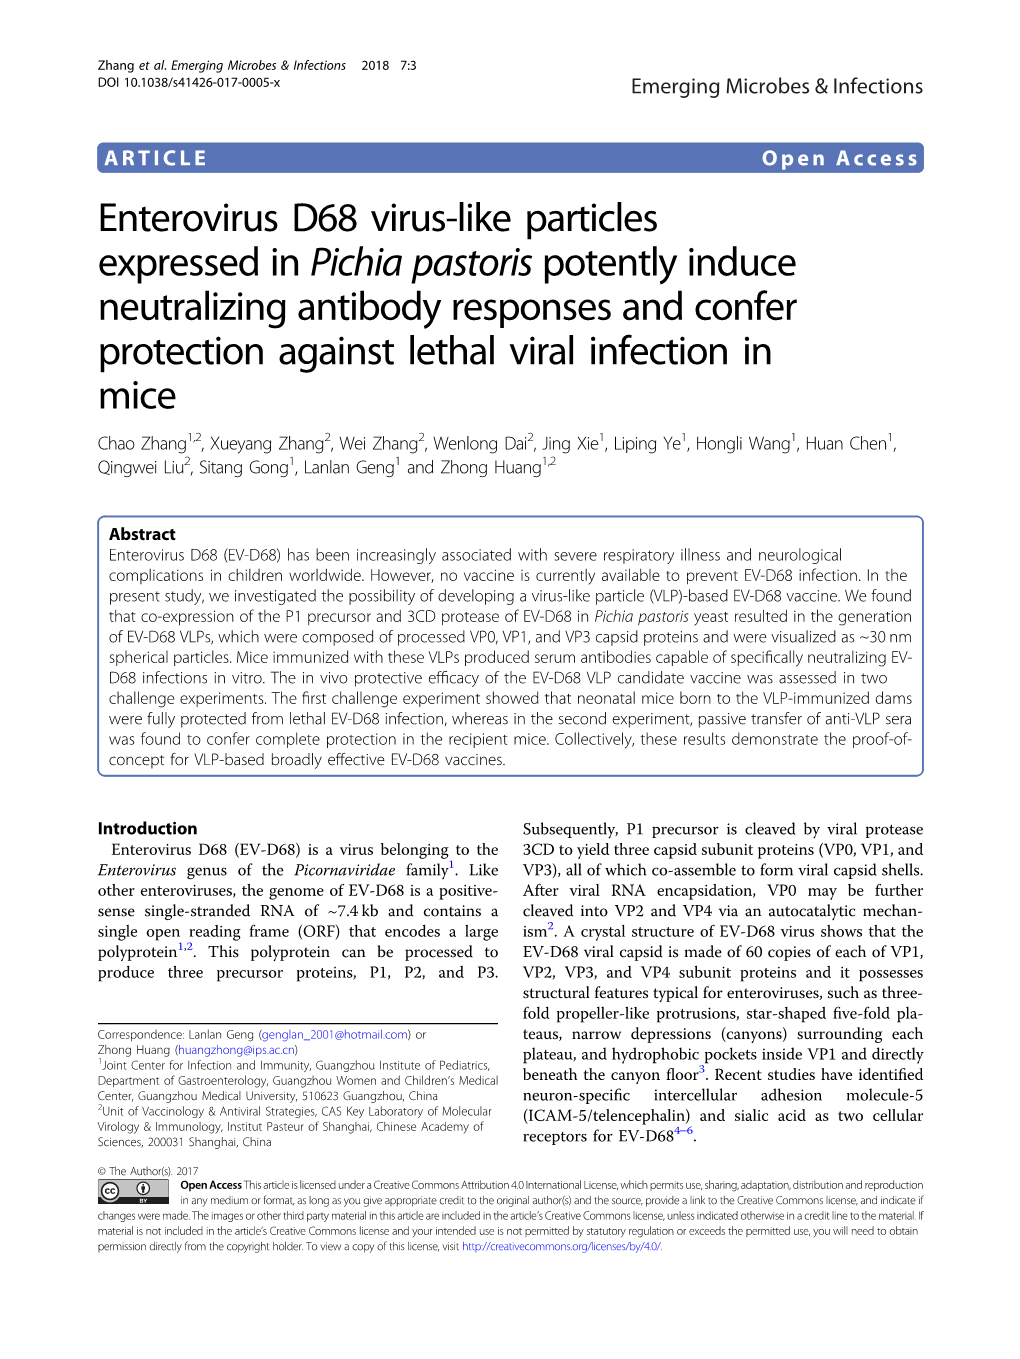 Enterovirus D68 Virus-Like Particles Expressed in Pichia Pastoris